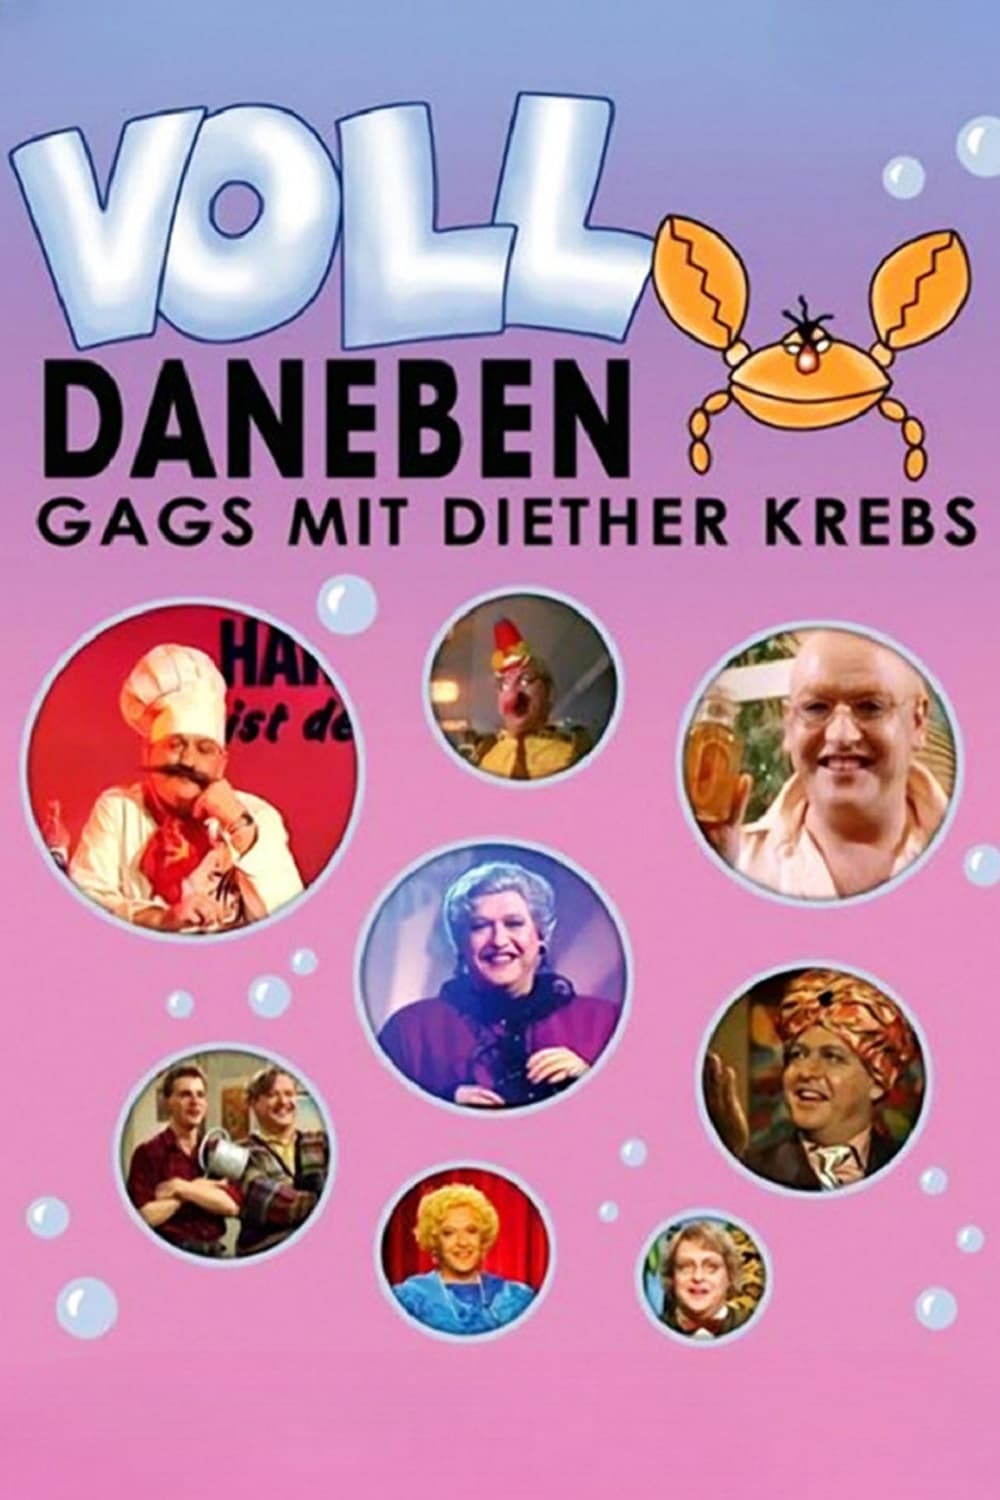 Voll daneben - Gags mit Diether Krebs (1990)